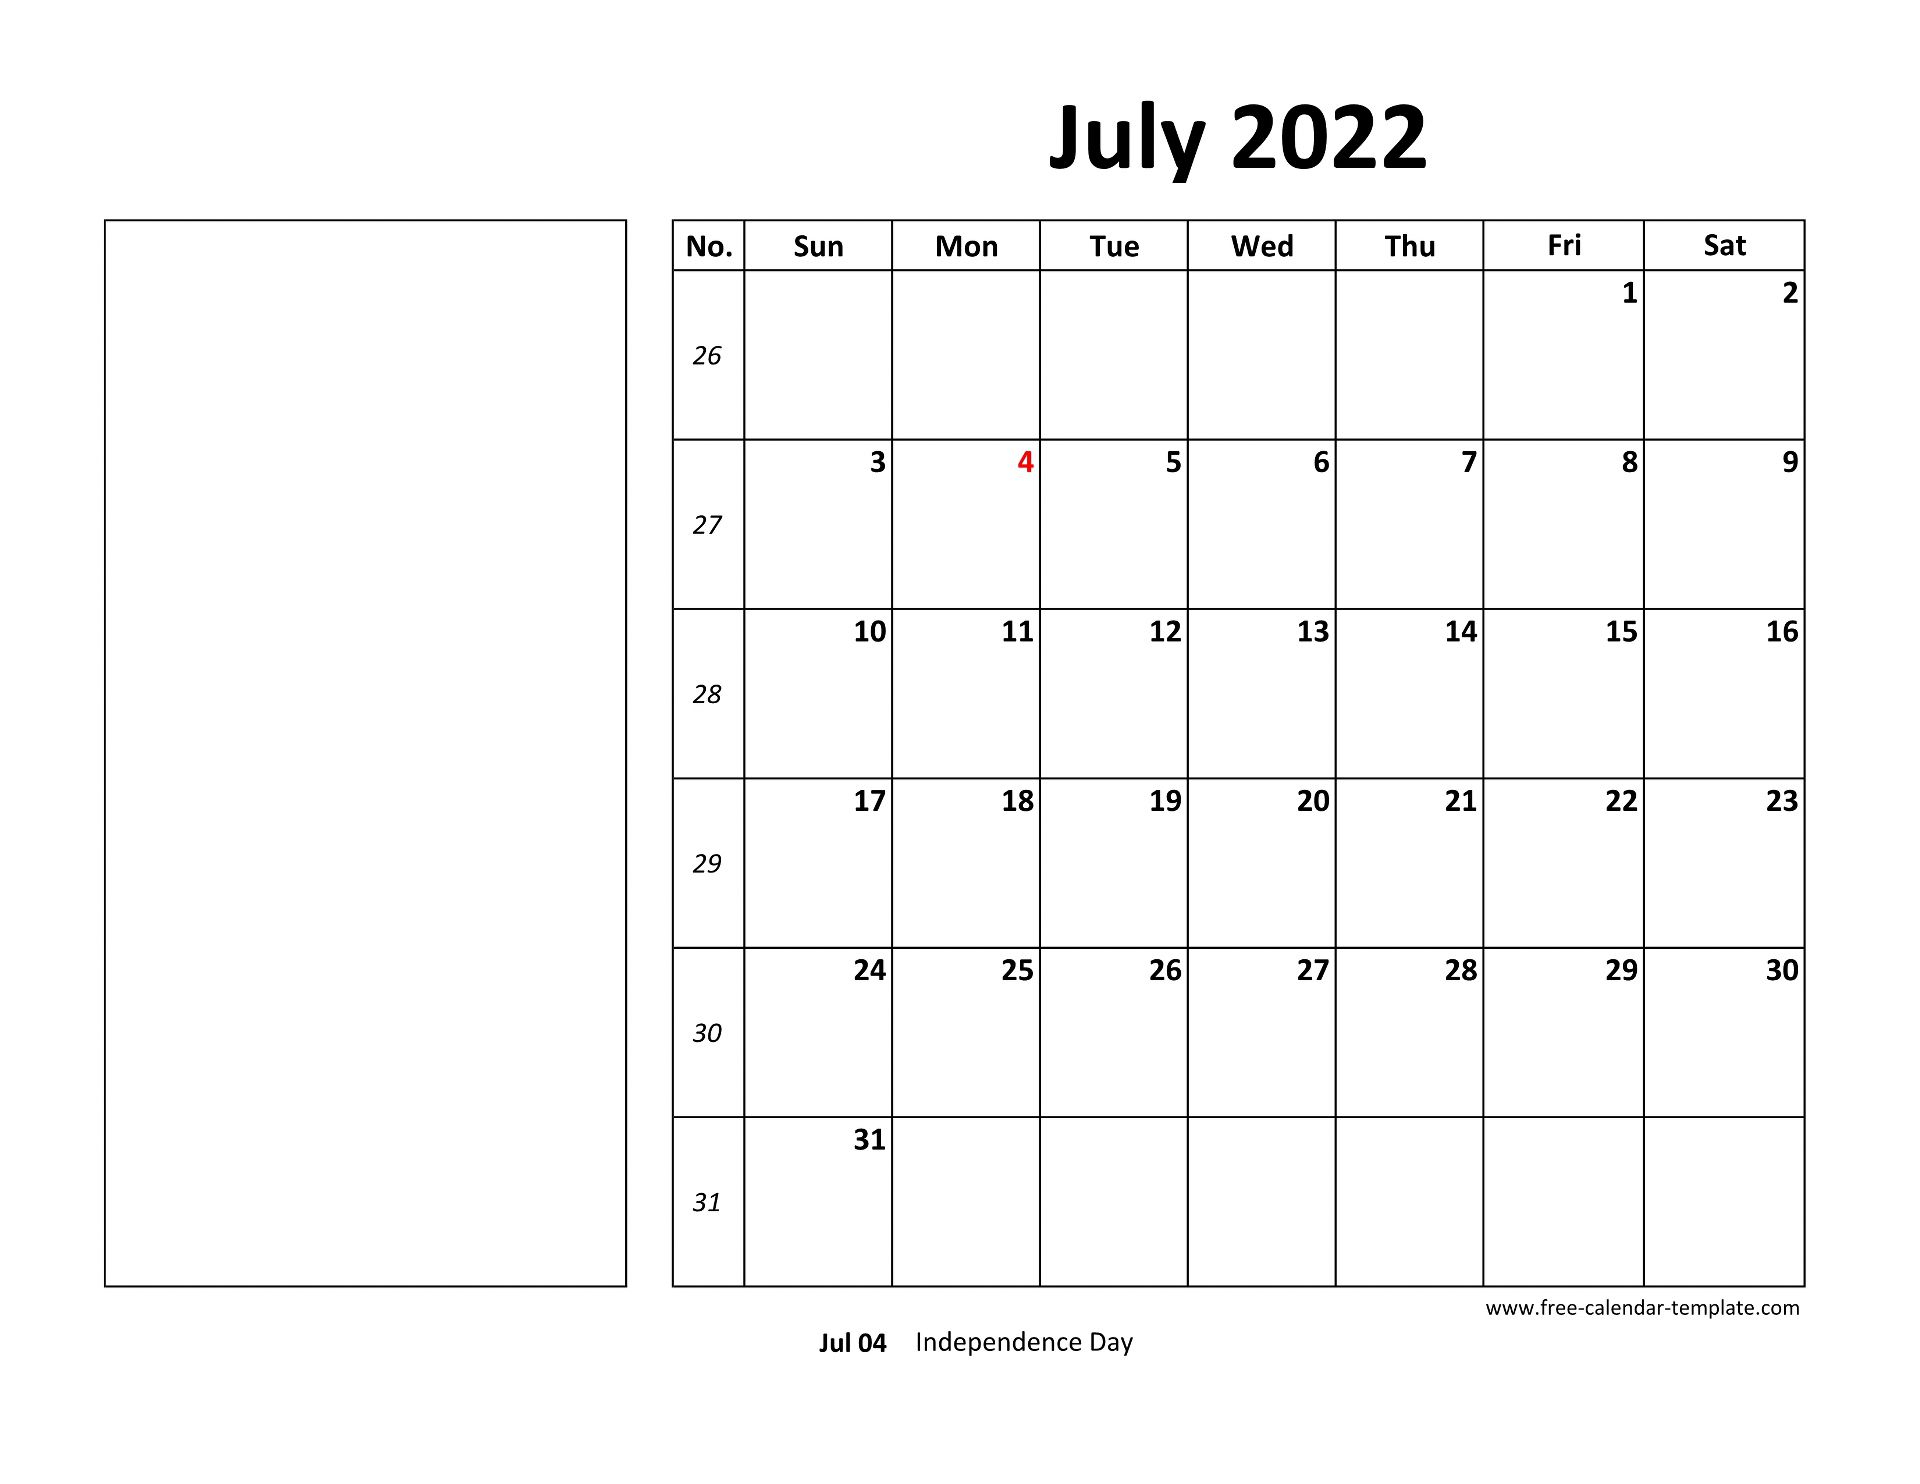 July 2022 Free Calendar Tempplate | Free-Calendar-Template